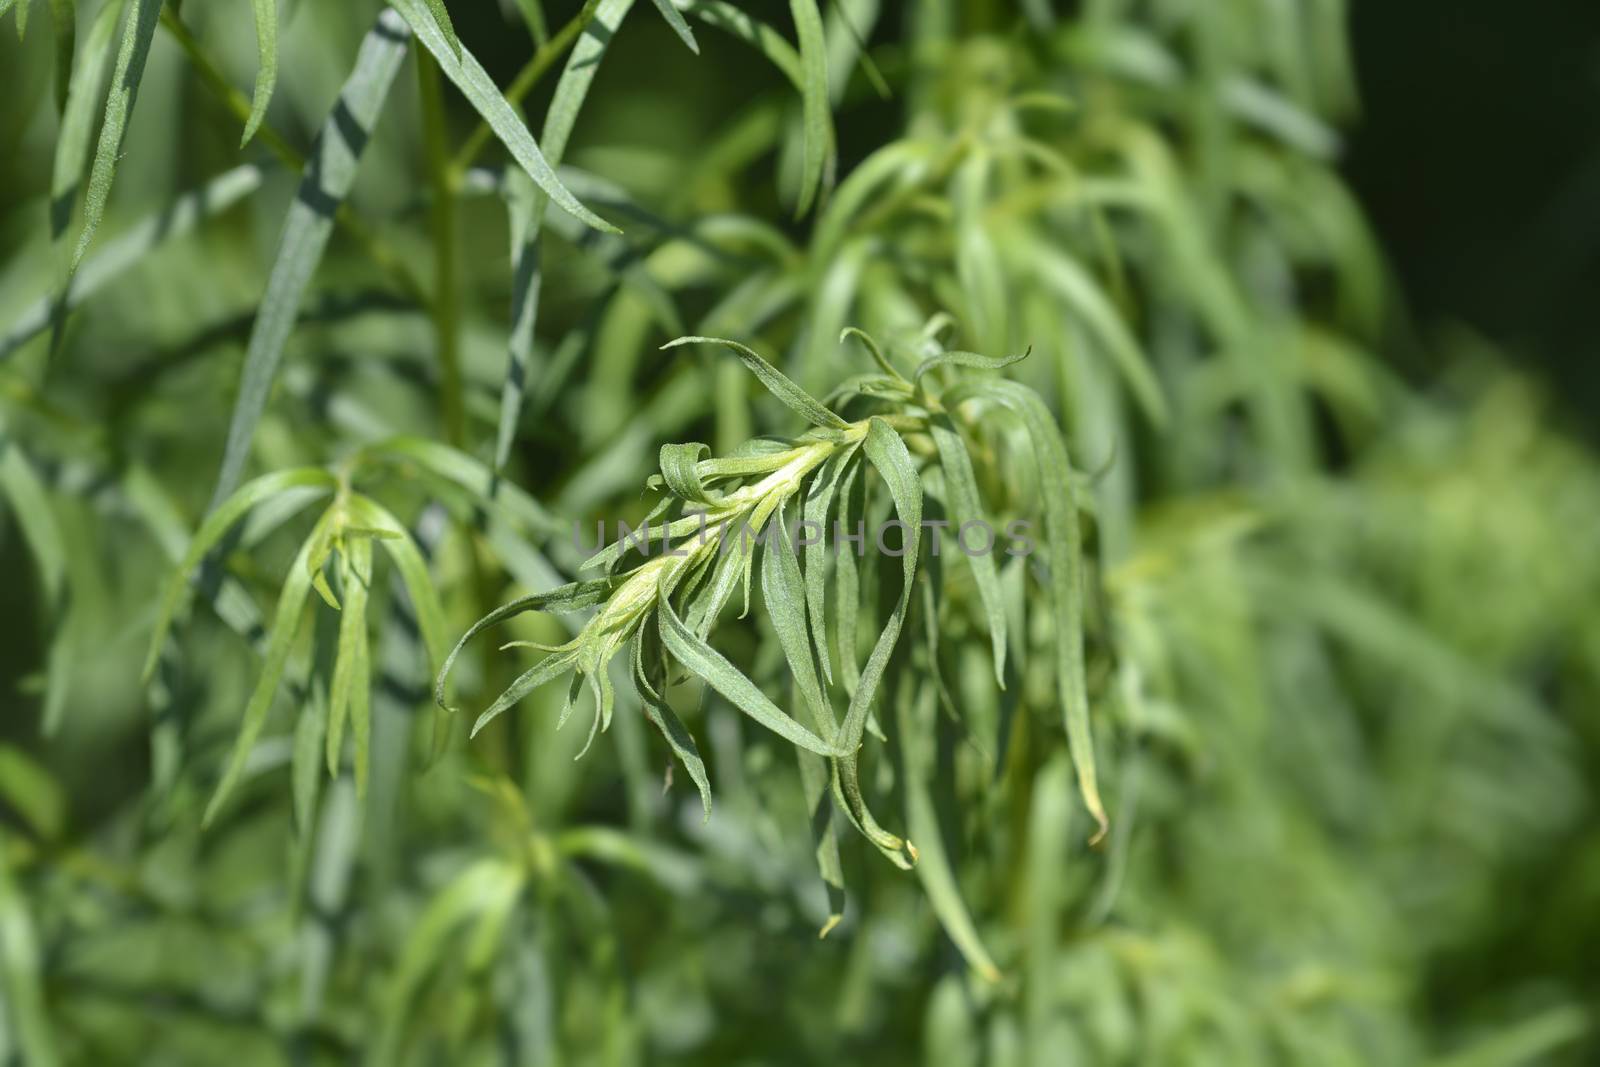 Tarragon leaves - Latin name - Artemisia dracunculus